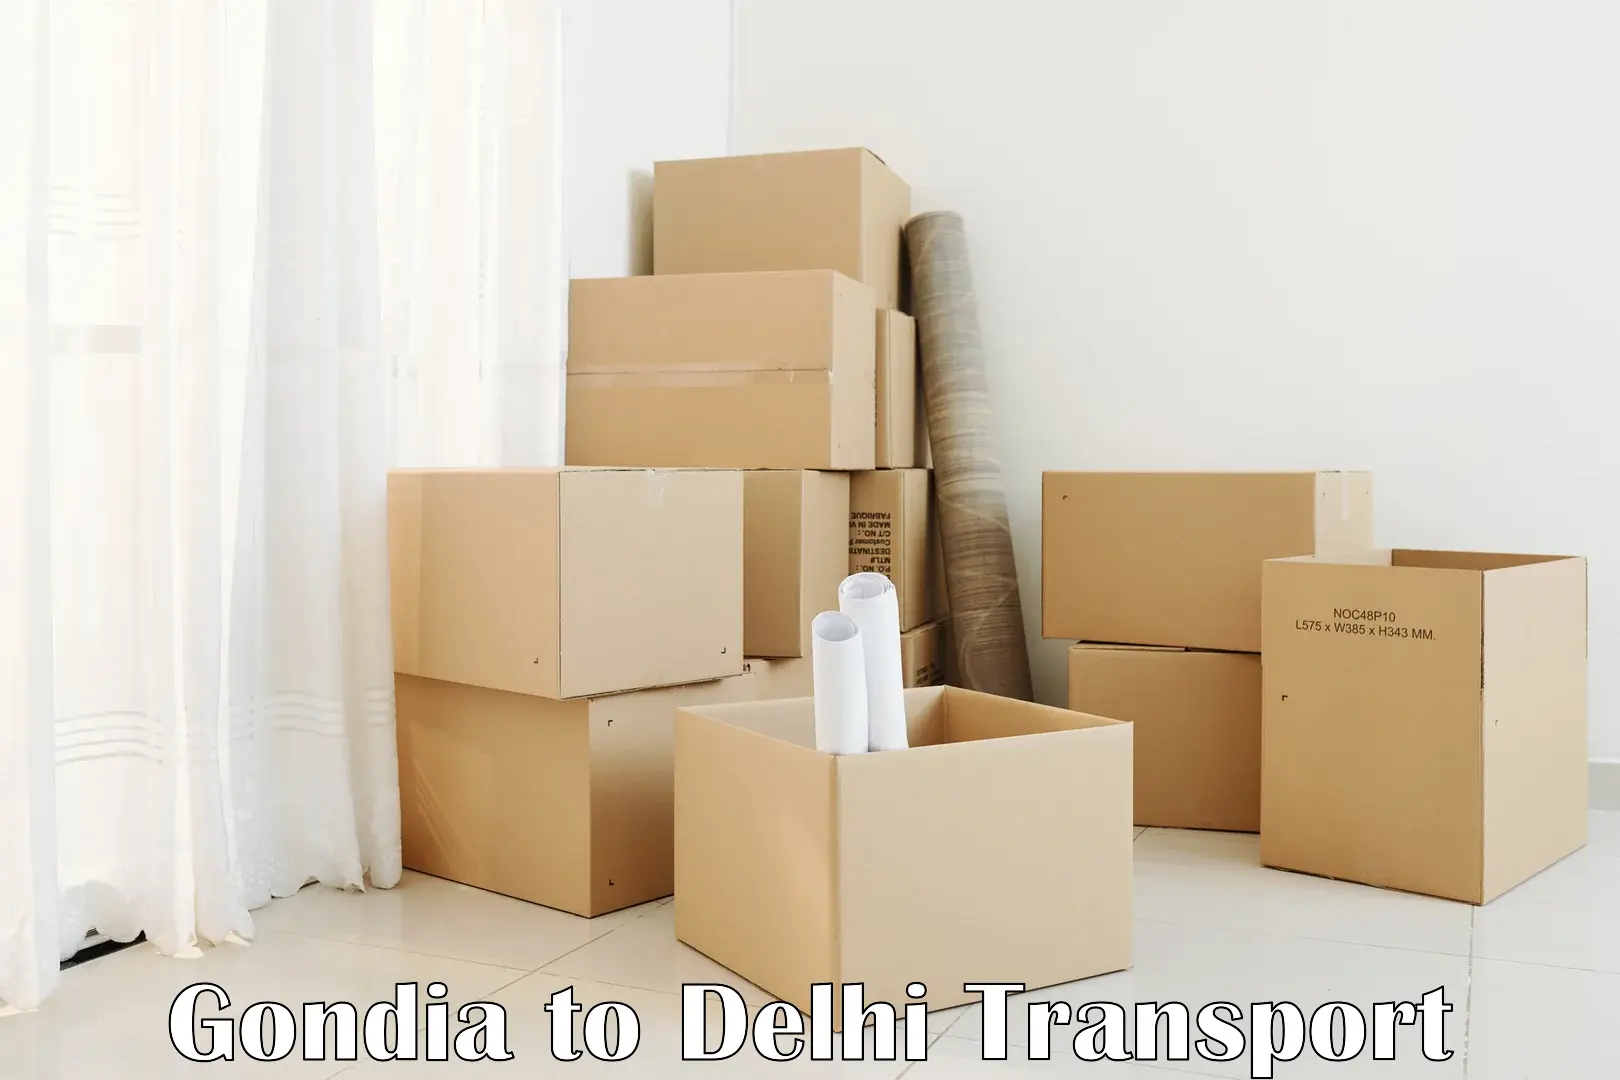 Container transport service Gondia to Burari